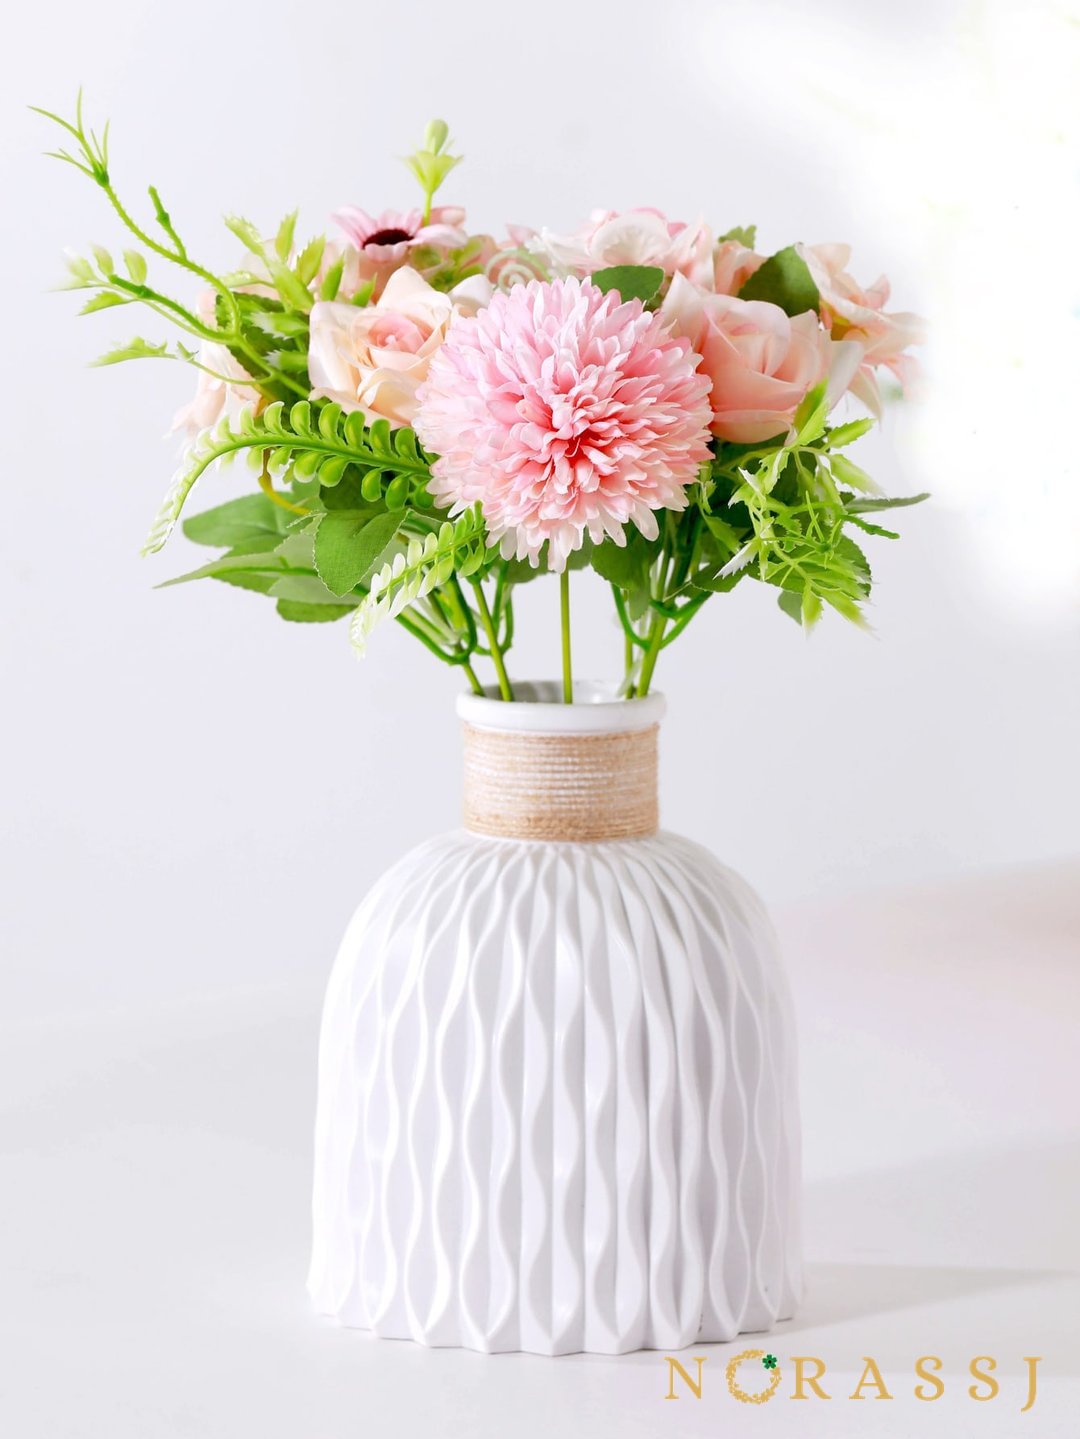 Delicated Ceramic Vases Decorative Flower Plastic Vase 